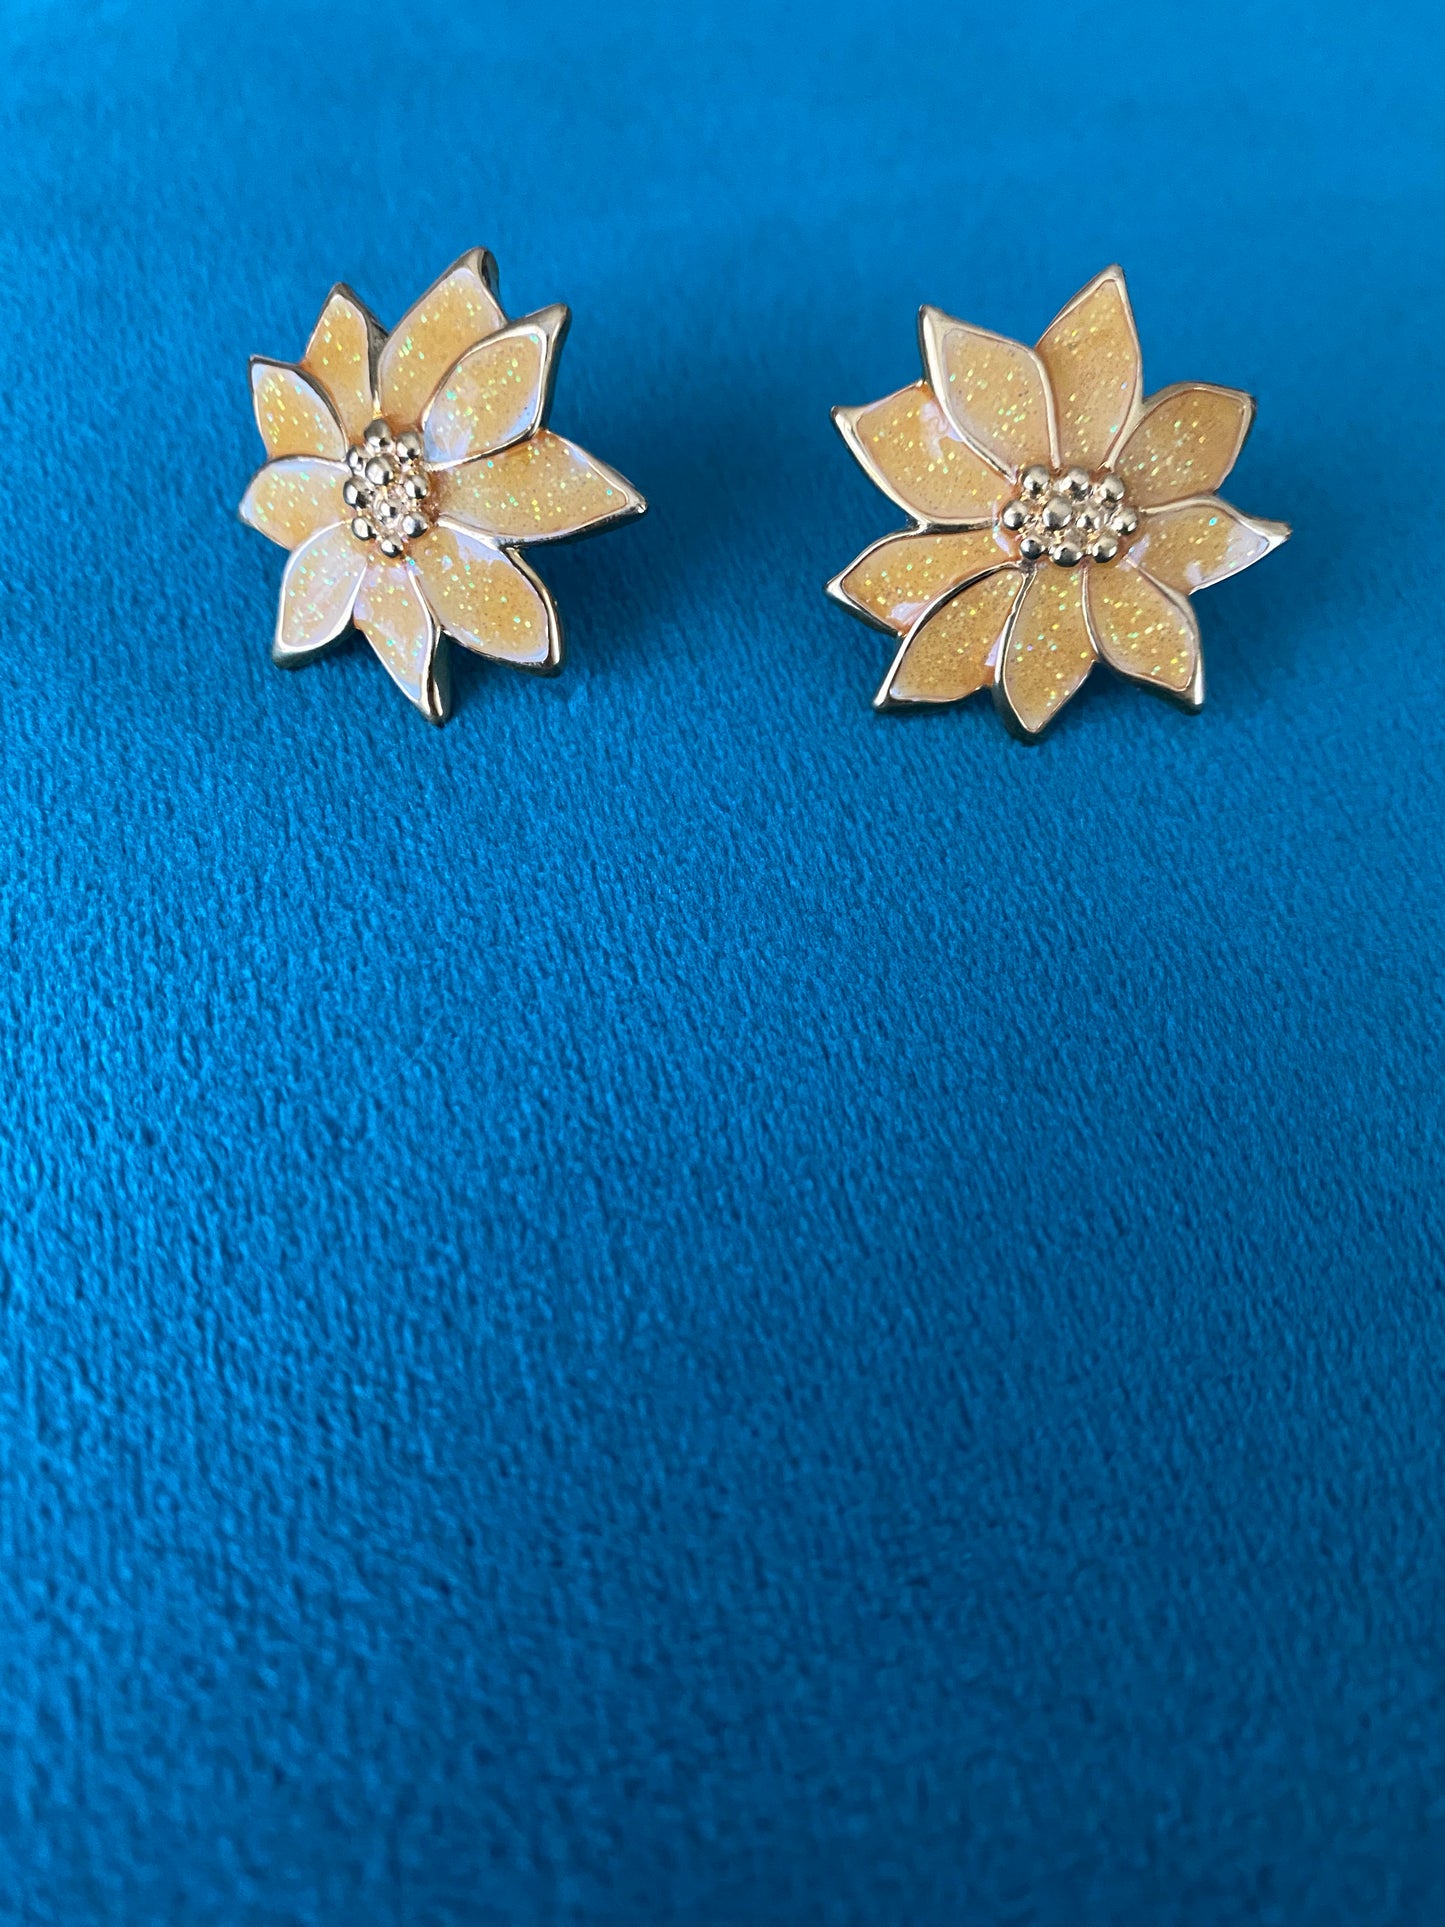 1960’s sunflower earrings